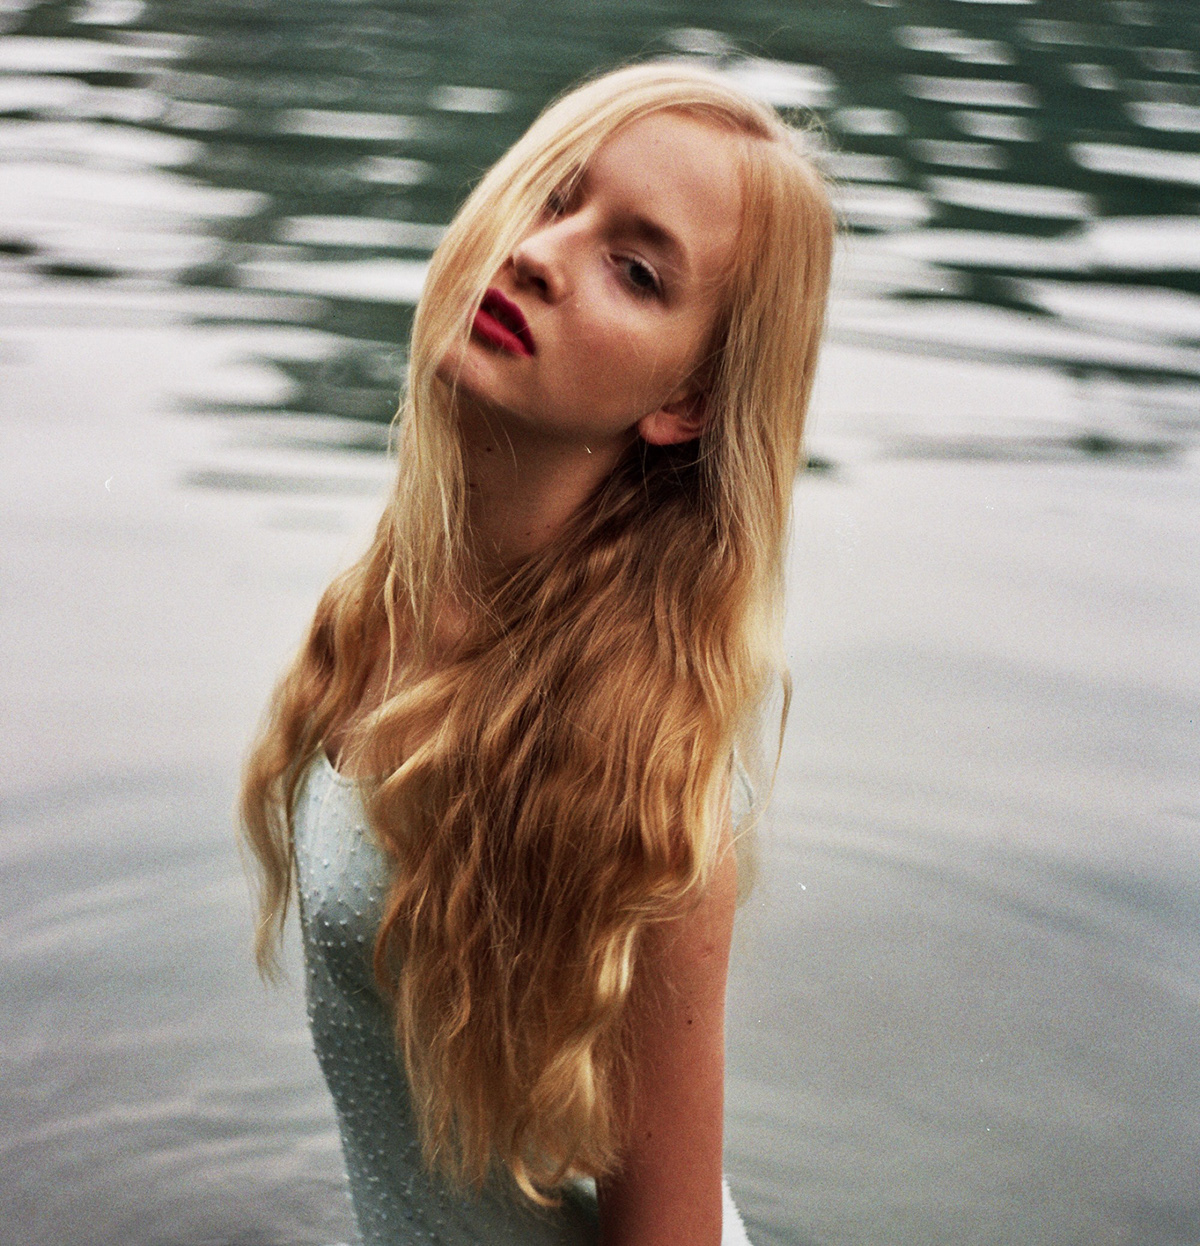 model  WOMAN  water  lake  portrait zenit Analogue  Pool